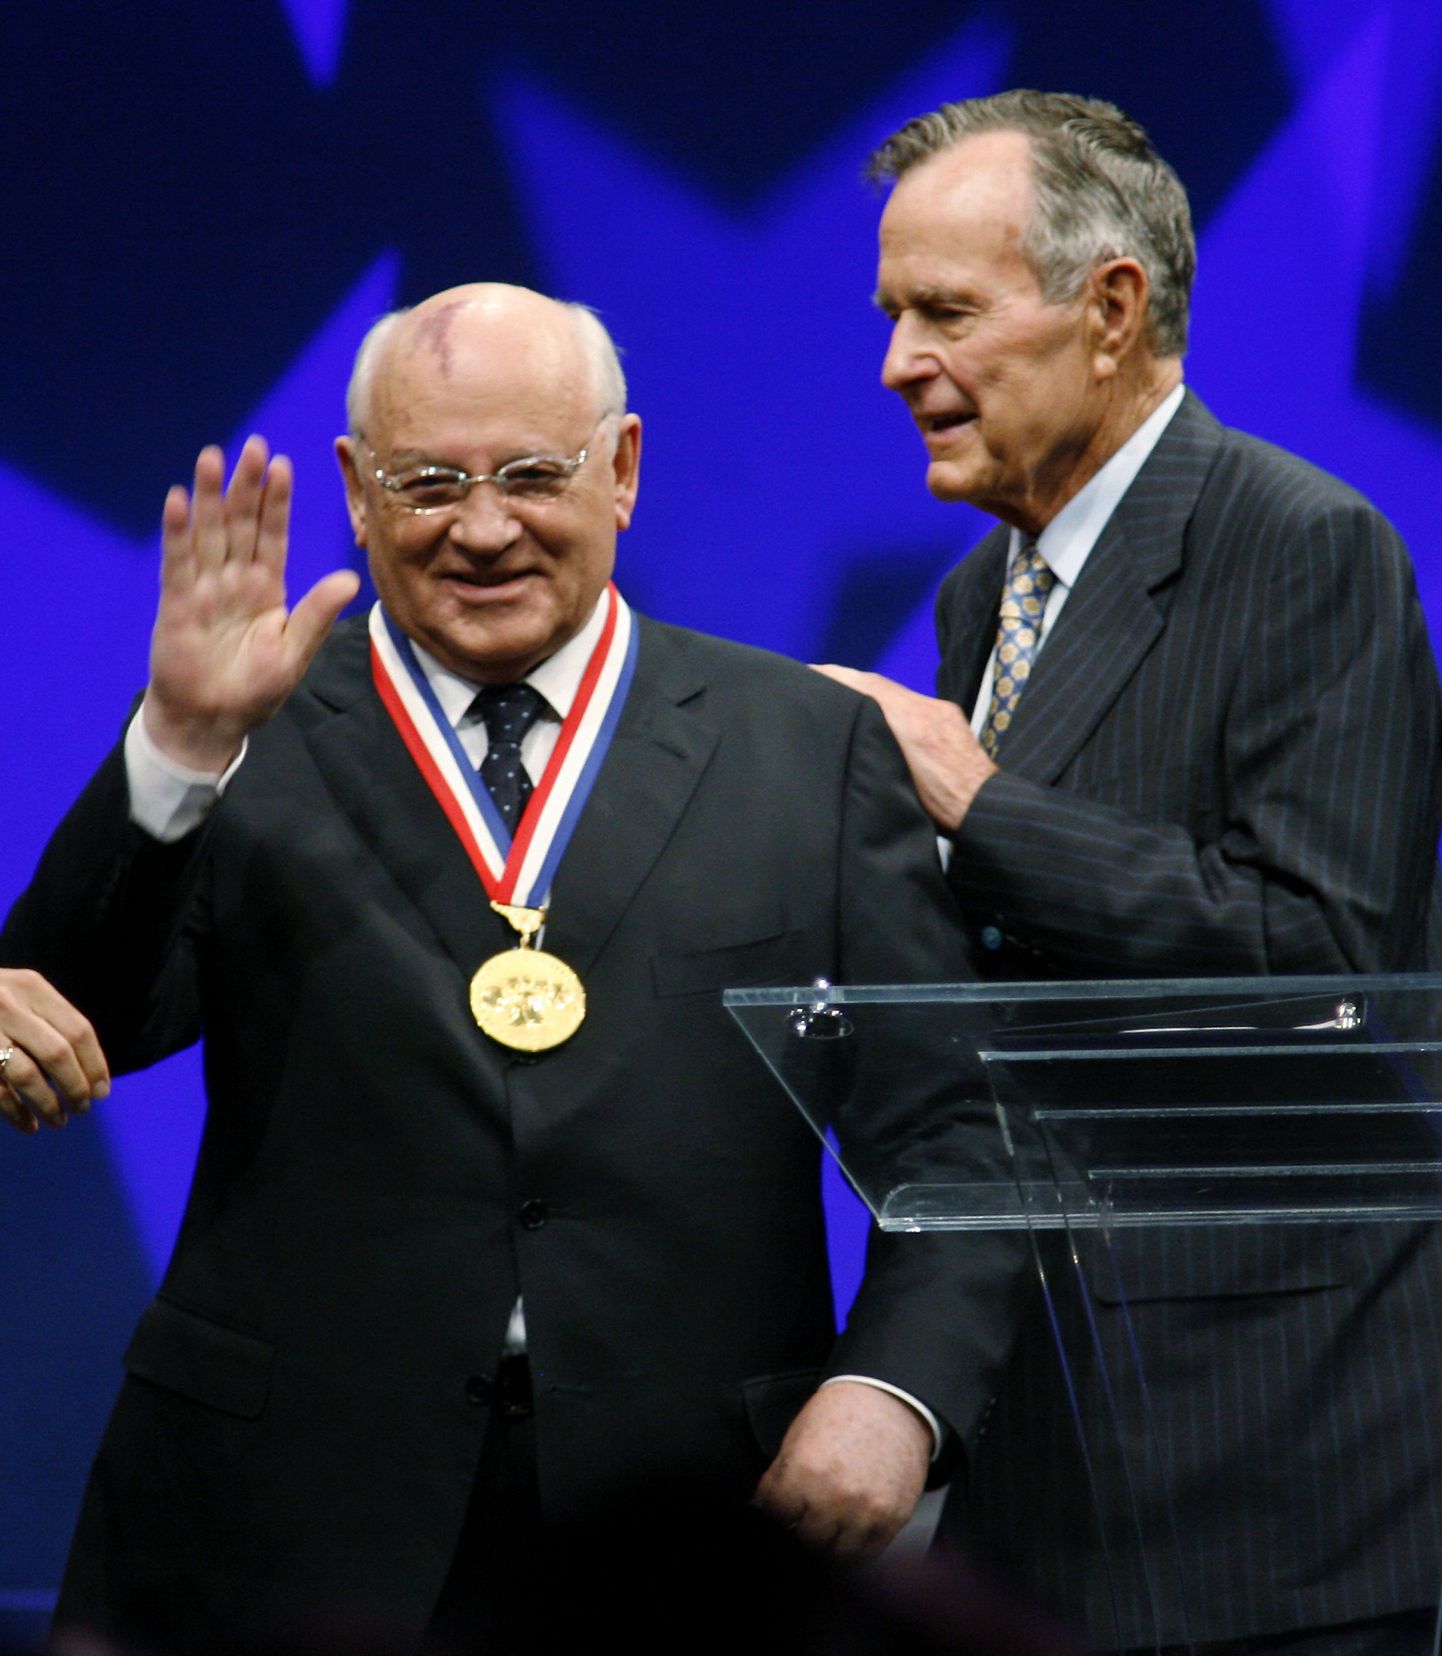 NSV Liidu viimane riigipea Mihhail Gorbatšov sai endiselt USA presidendilt George H.W. Bushilt oma panuse eest Külma sõja lõpetamisel Vabaduse Medali.